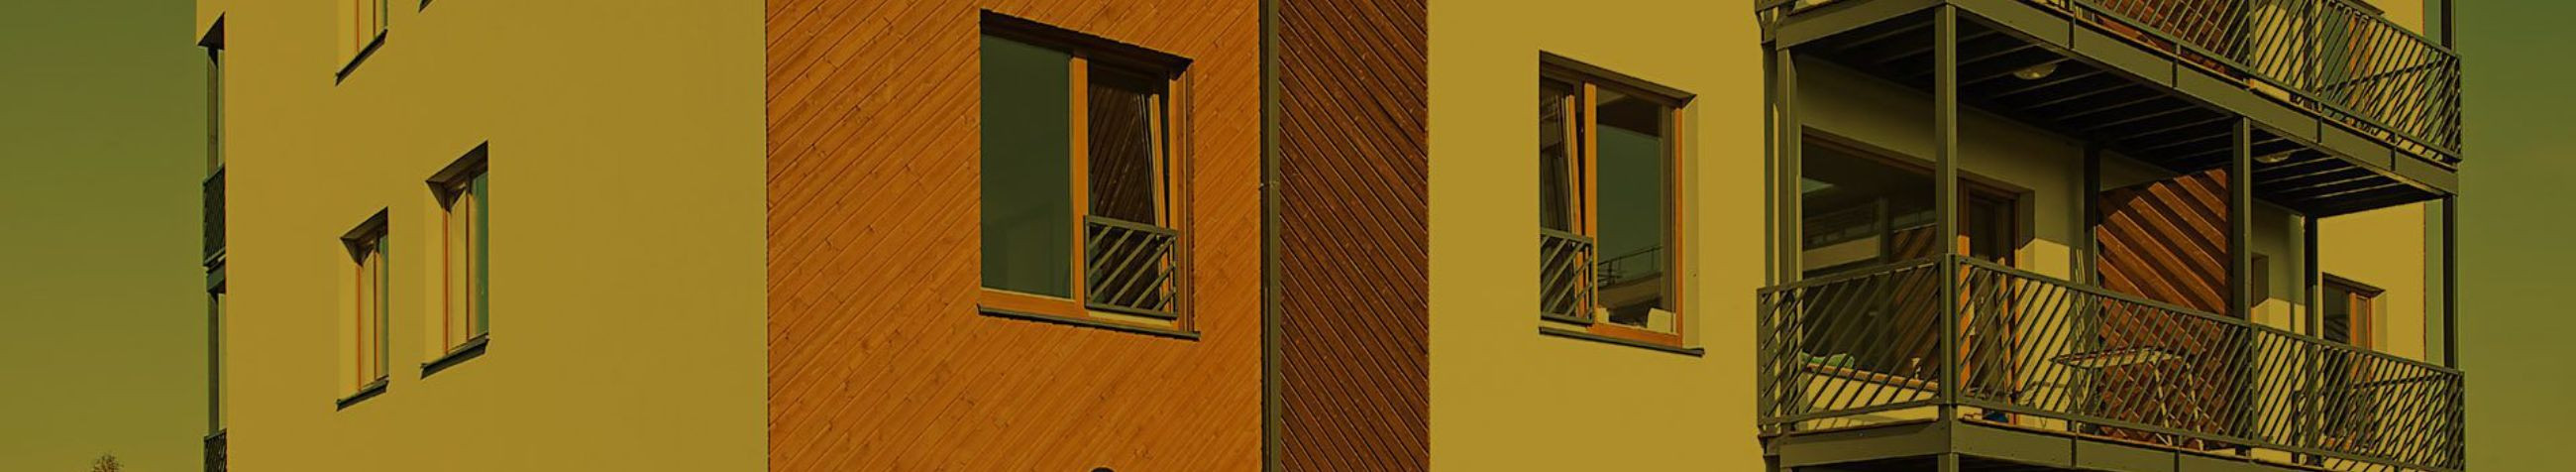 REHPOL on spetsialiseerunud kvaliteetsete akna- ja ukselahenduste tootmisele põhjamaisesse kliimasse, hõlmates mitmeid materjale ja arhitektuuristiile